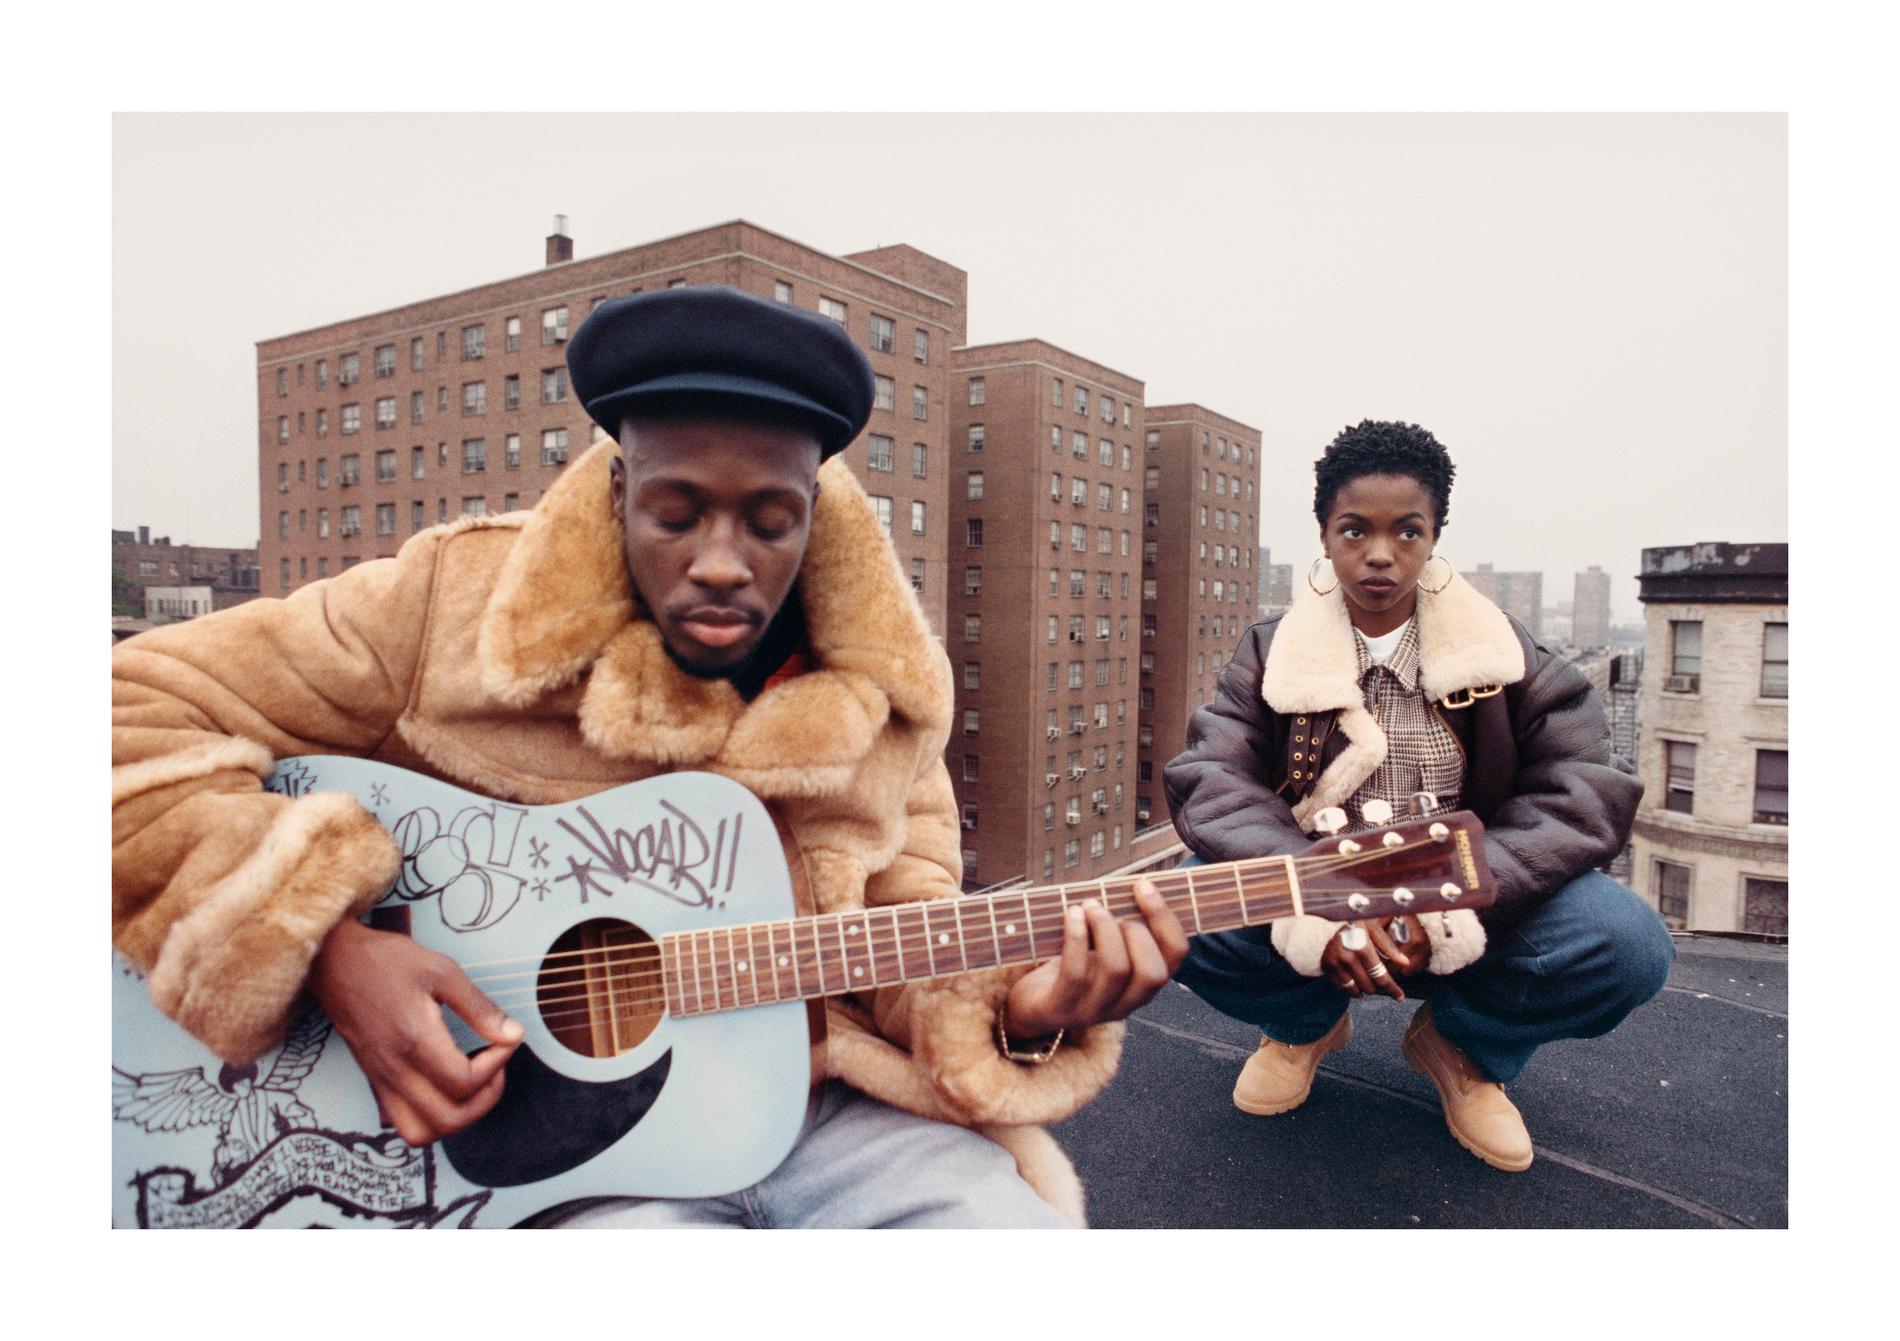 Hiphopens pionjärer och stilbildande artister syns på Fotografiskas omfattande utställning "Hip-hop: Conscious, Unconscious". I bild Wyclef Jean och Lauryn Hill i East Harlem, New York City 1993. Pressbild.